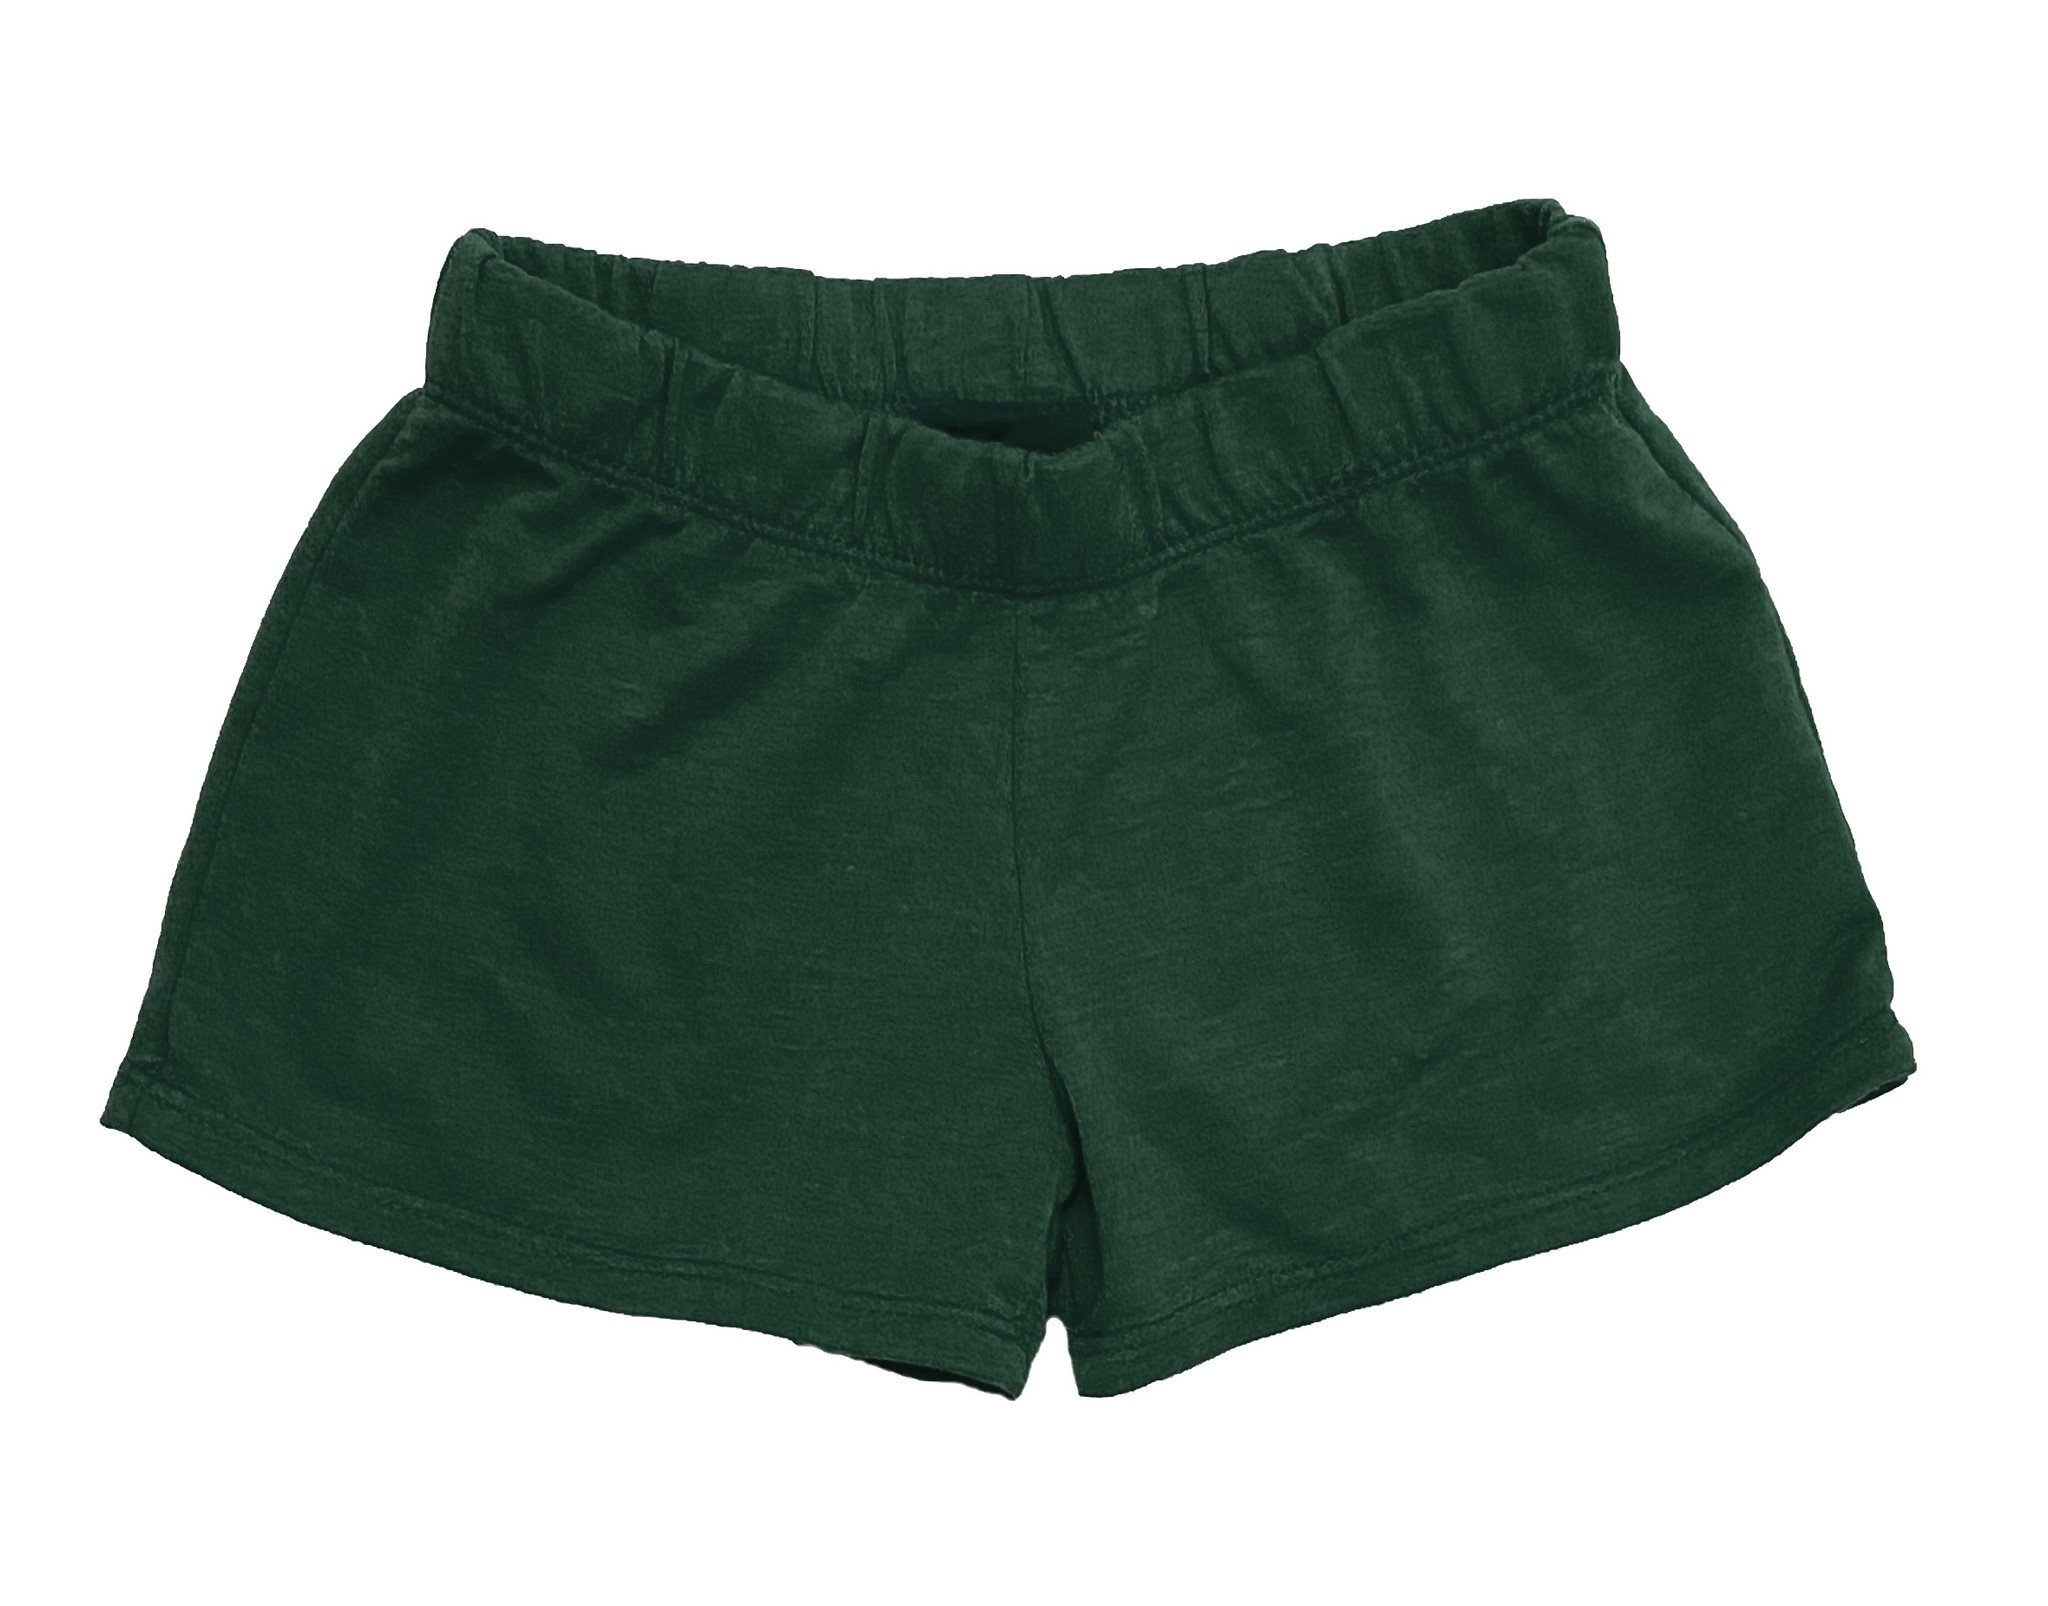 https://cdn.shoplightspeed.com/shops/604692/files/40377381/firehouse-hunter-green-sweat-shorts.jpg